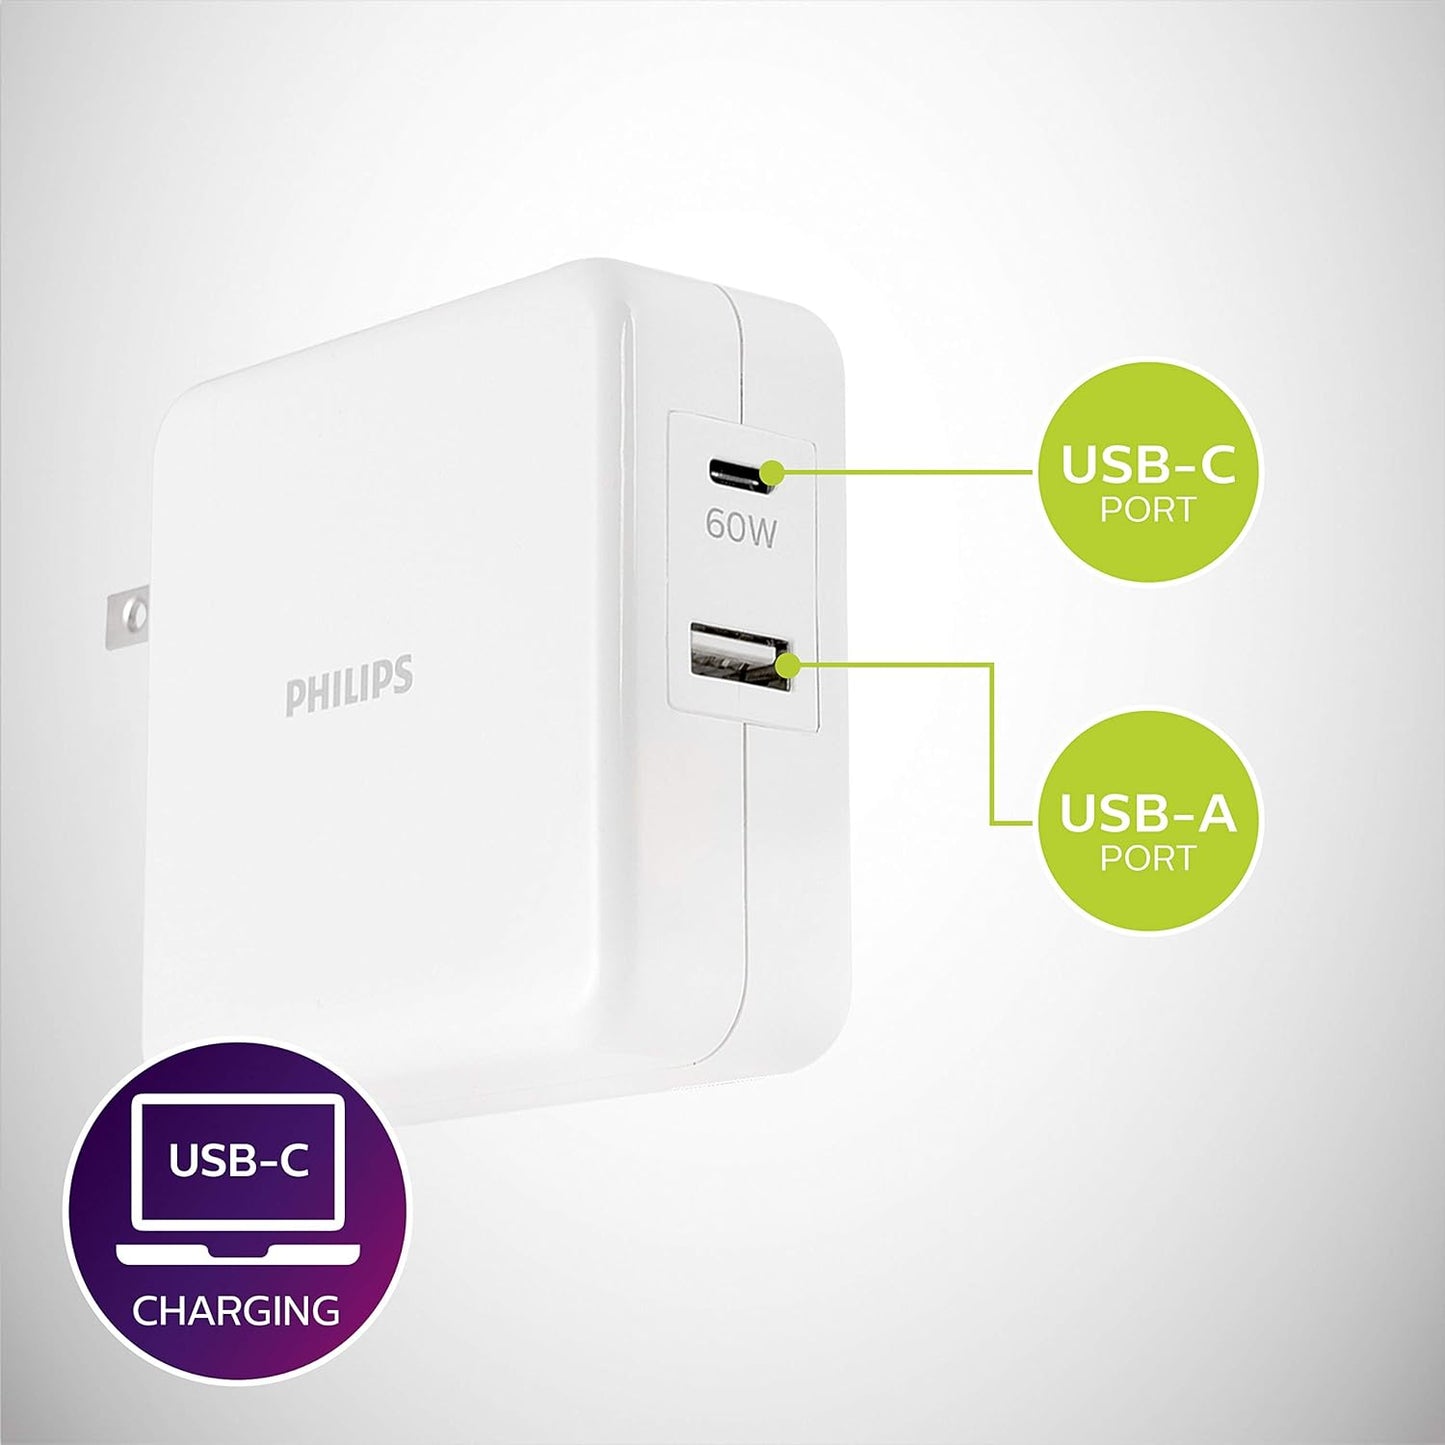 Cargador USB/USB-C de 60Watt para laptop y dispositivos mobiles con compatibilidad universal.